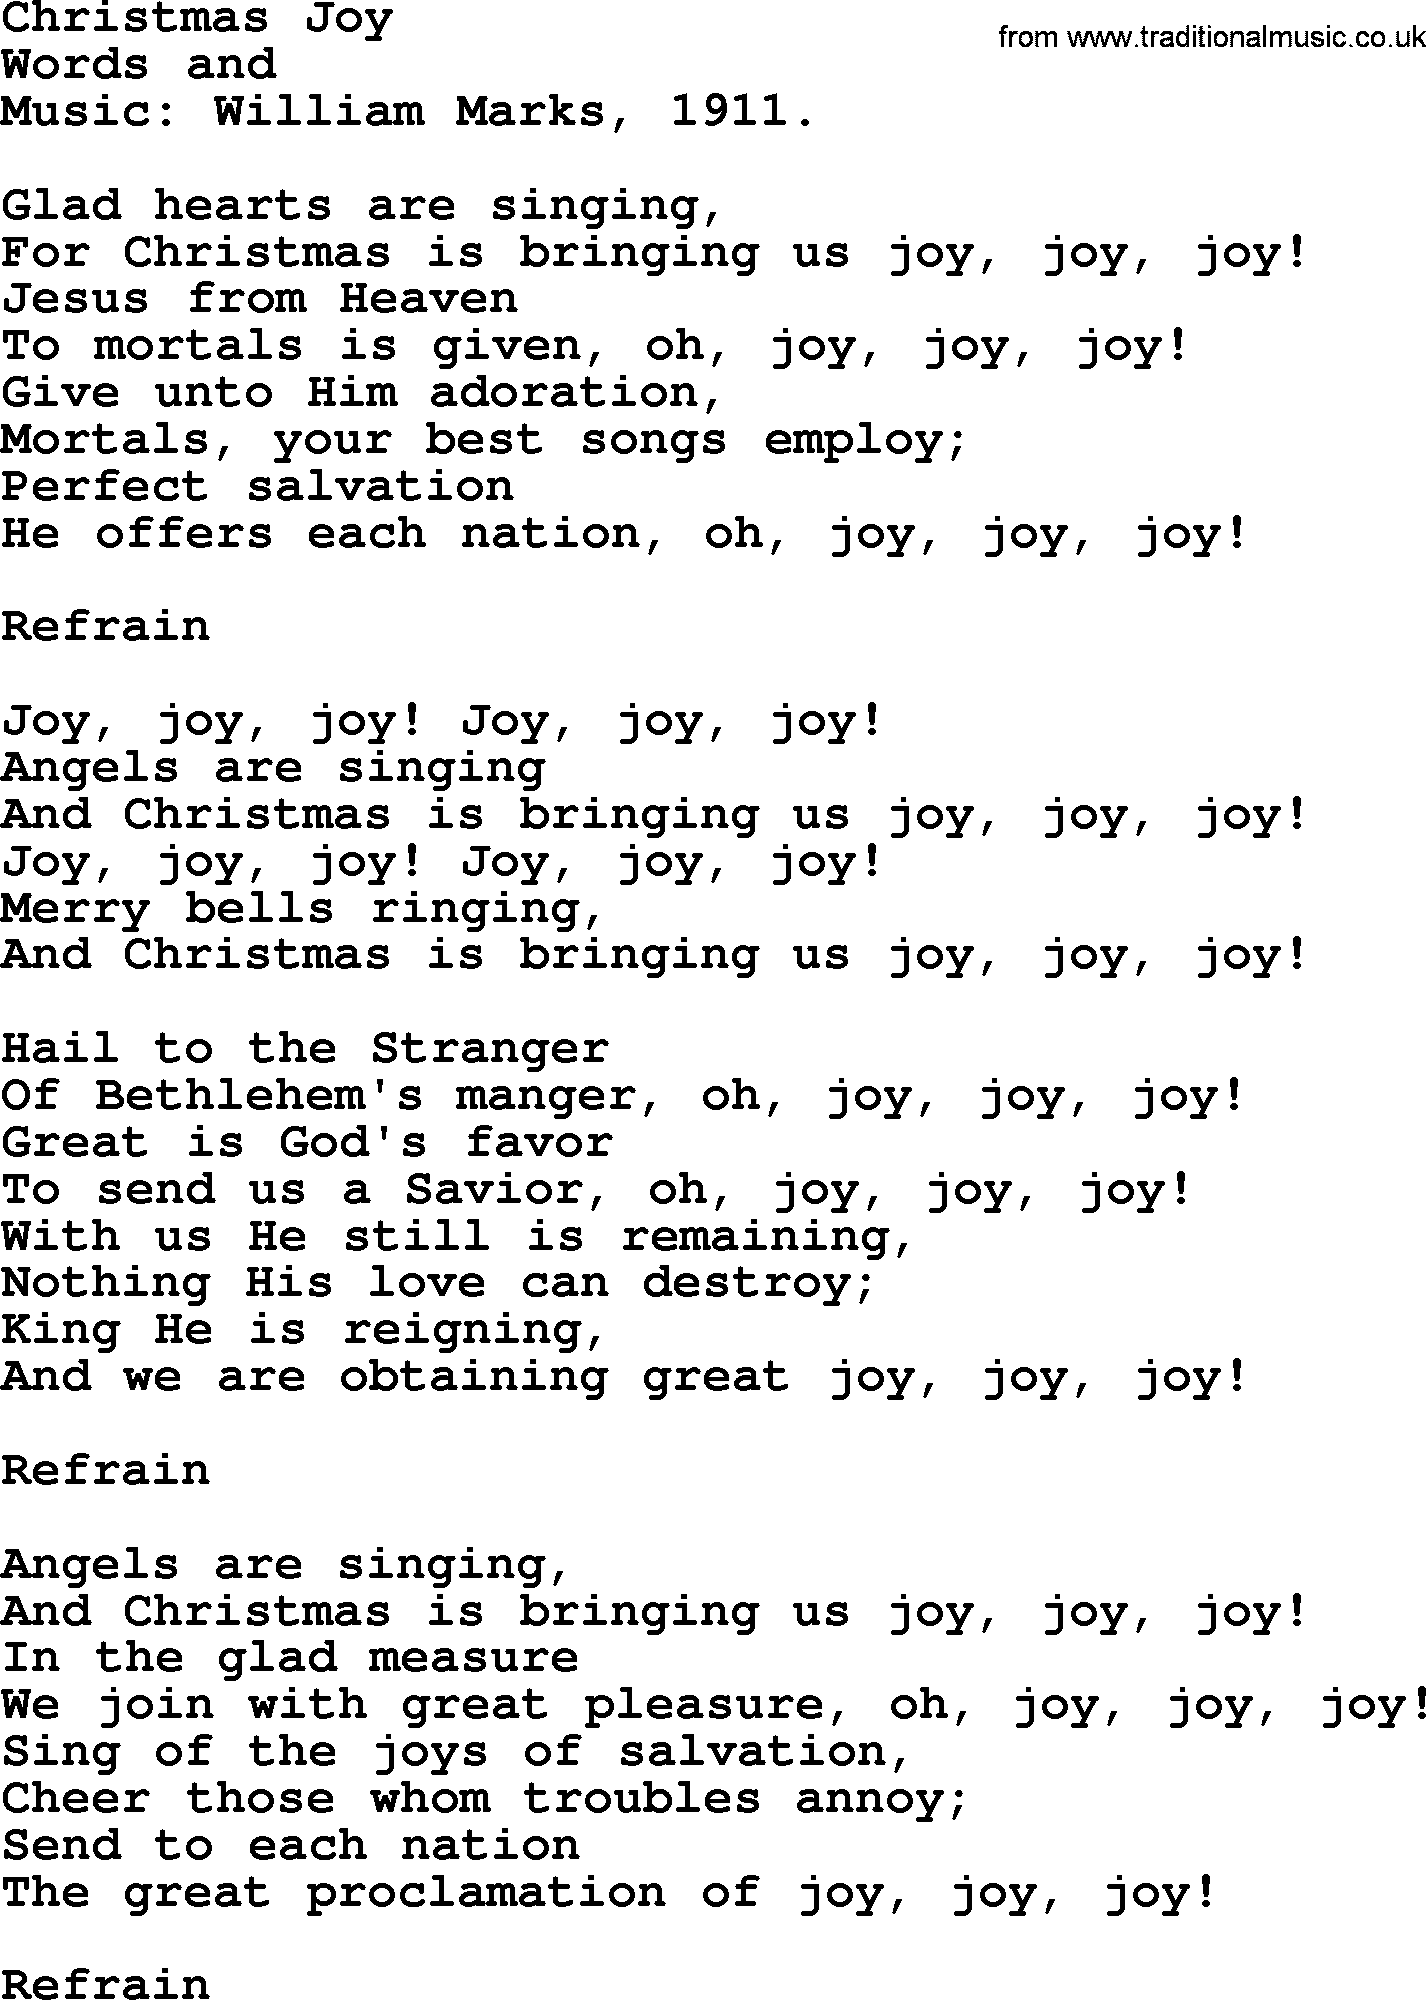 Christmas Hymns, Carols and Songs, title: Christmas Joy, lyrics with PDF